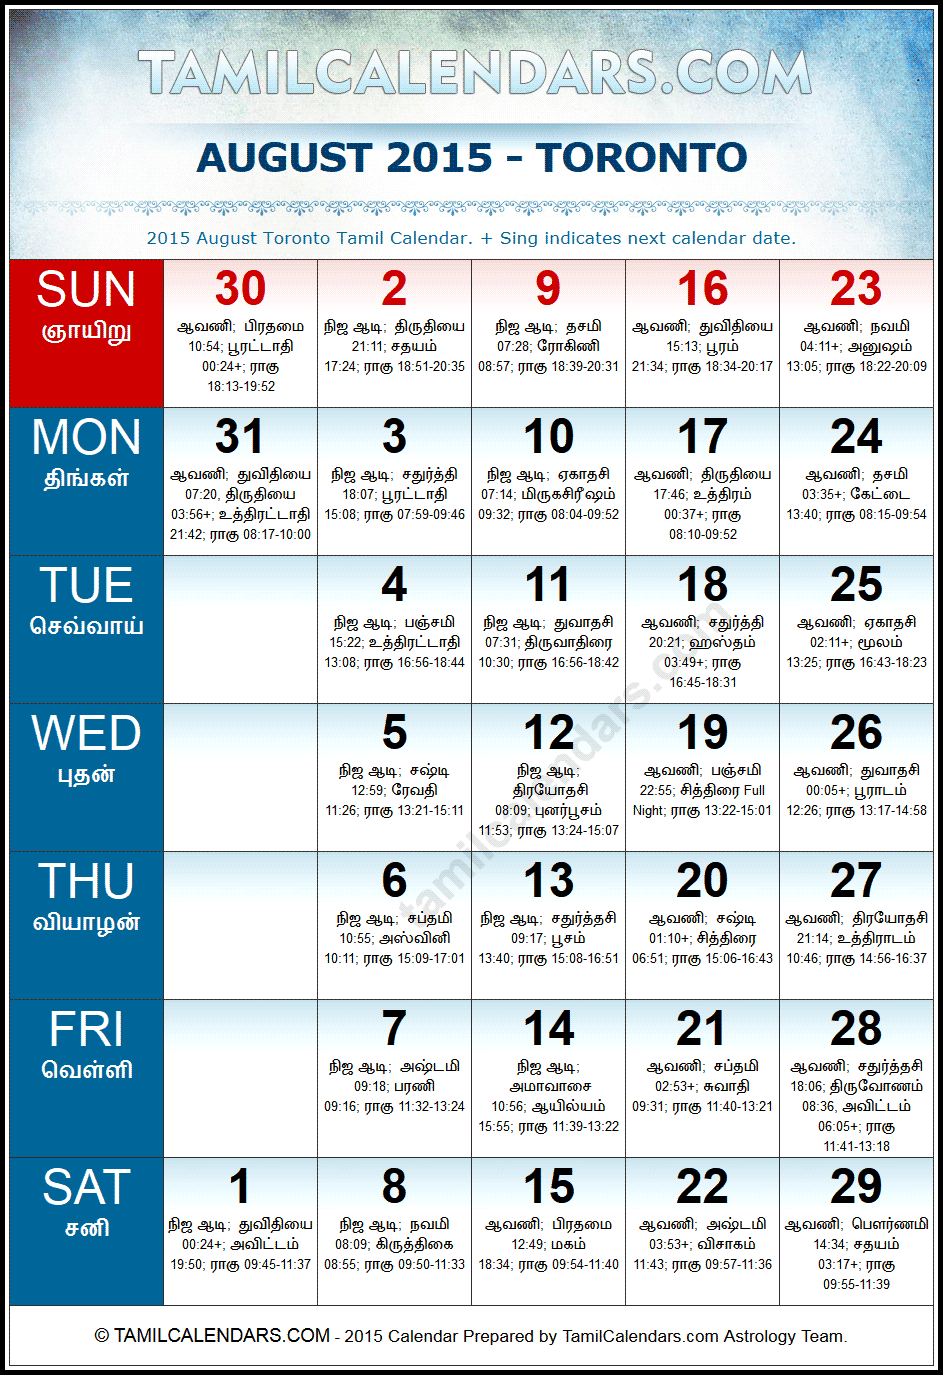 August 2015 Tamil Calendar for Toronto, Canada